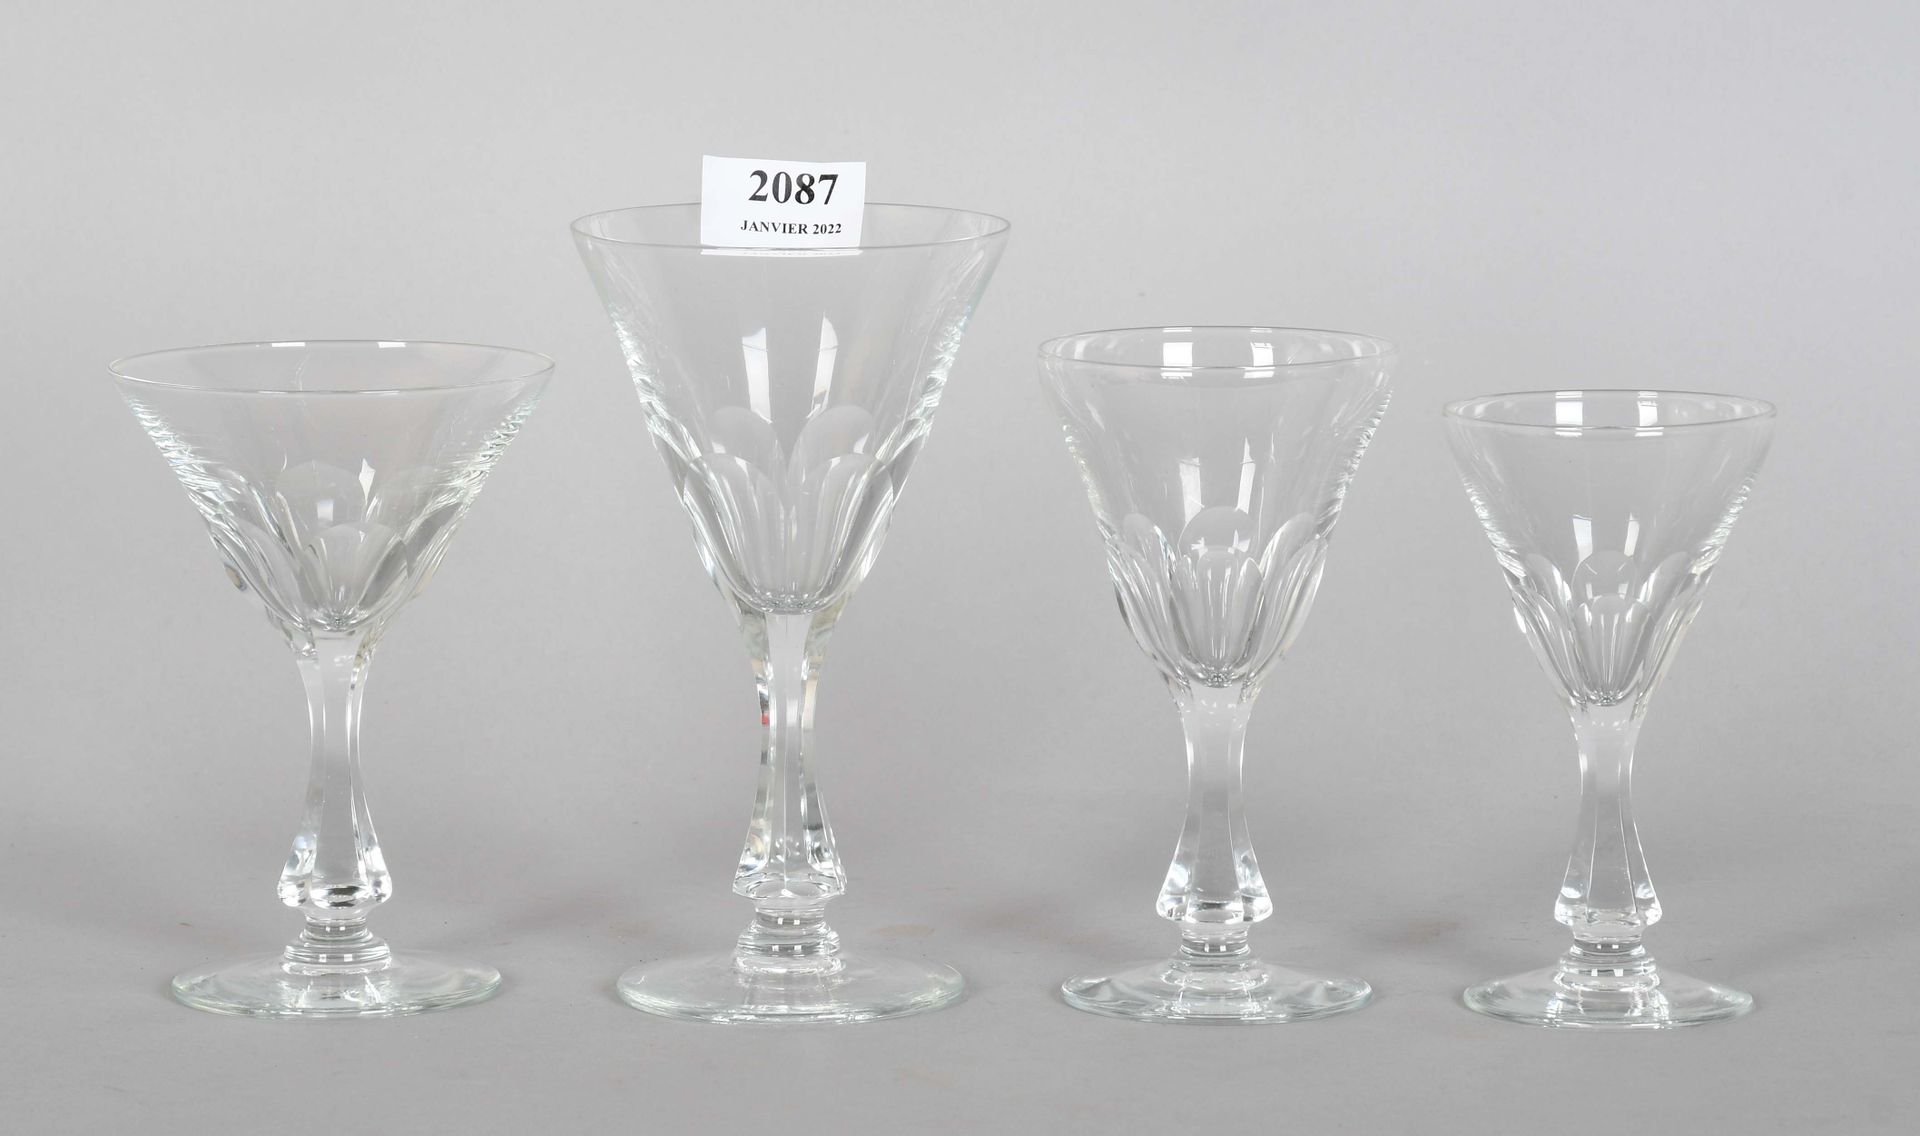 Null 水晶玻璃套装，腿上有扭曲的罗纹碗

包括三十三只杯子：六只香槟杯，九只红葡萄酒杯，八只白葡萄酒杯和十只水杯。